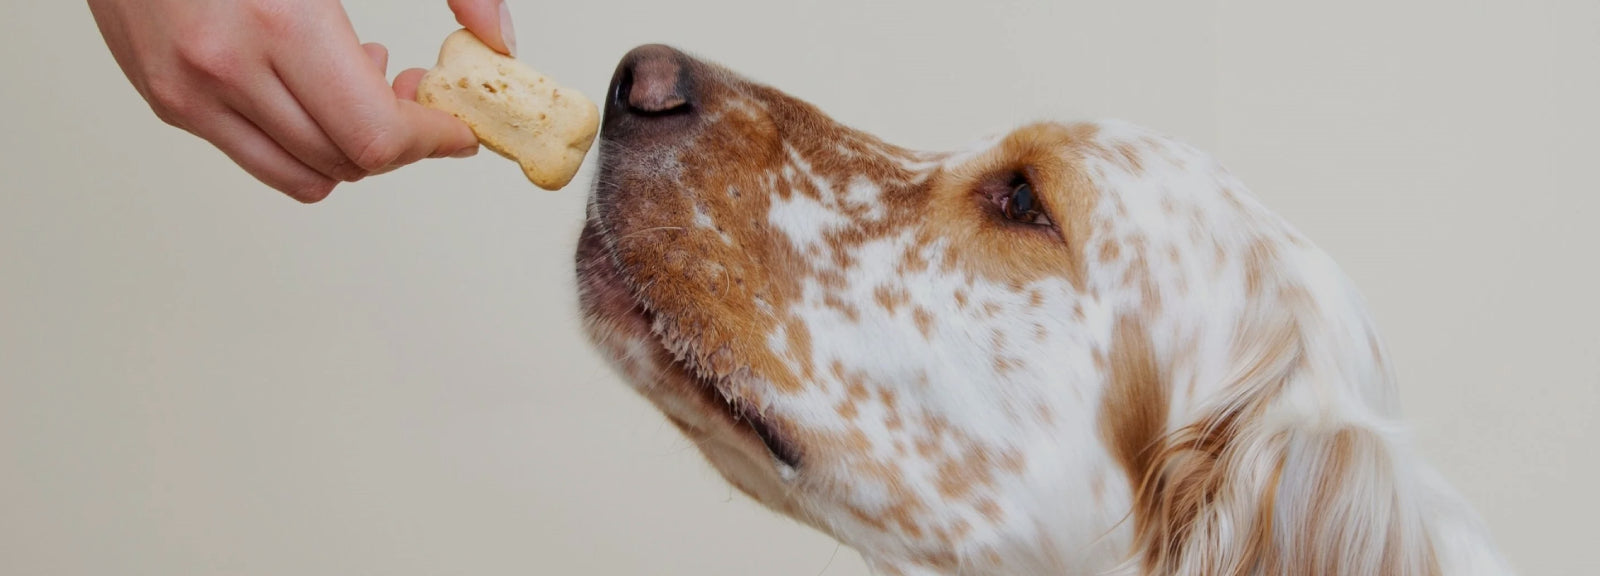 Biscotti per cani: golosi premi artigianali e naturali